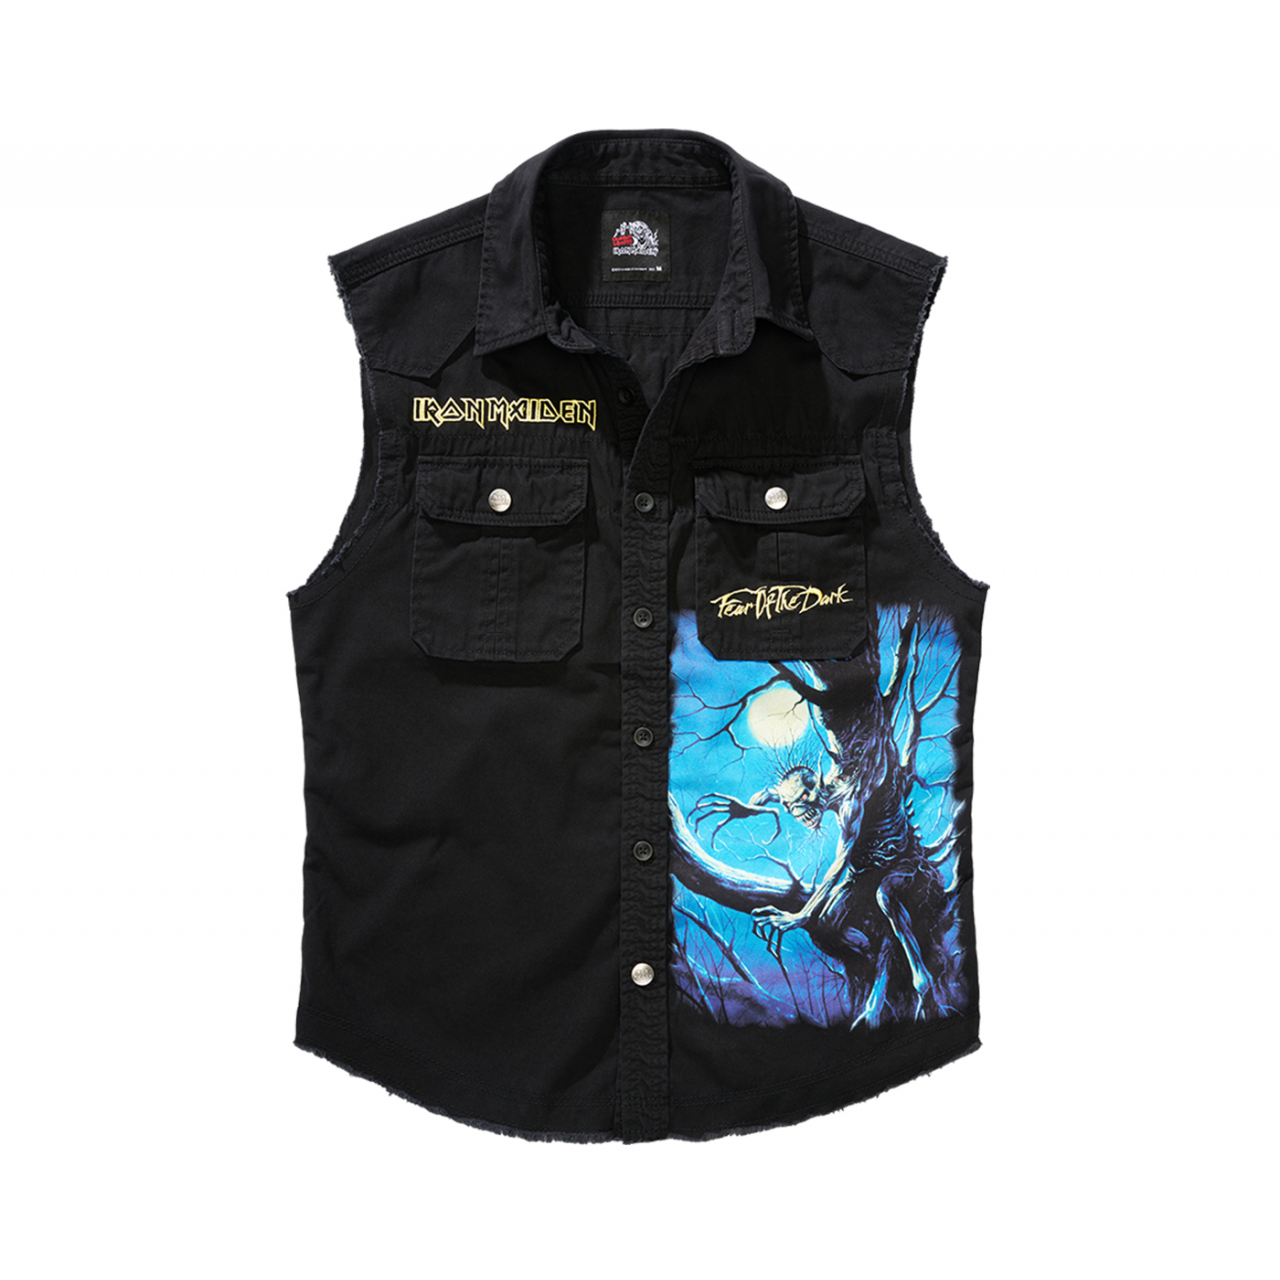 Košile Brandit Iron Maiden Vintage Shirt Sleeveless FOTD - černá, 4XL